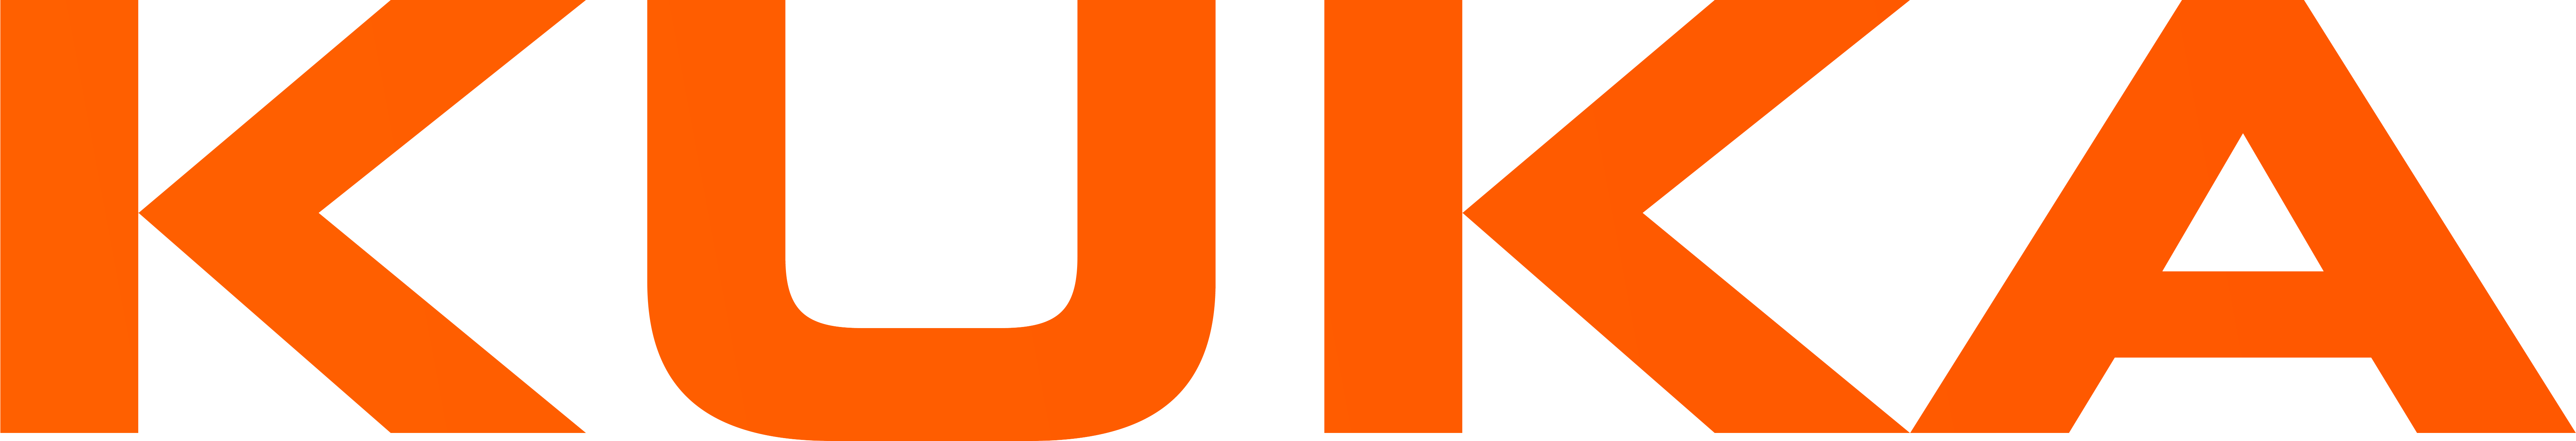 Logo von KUKA AG